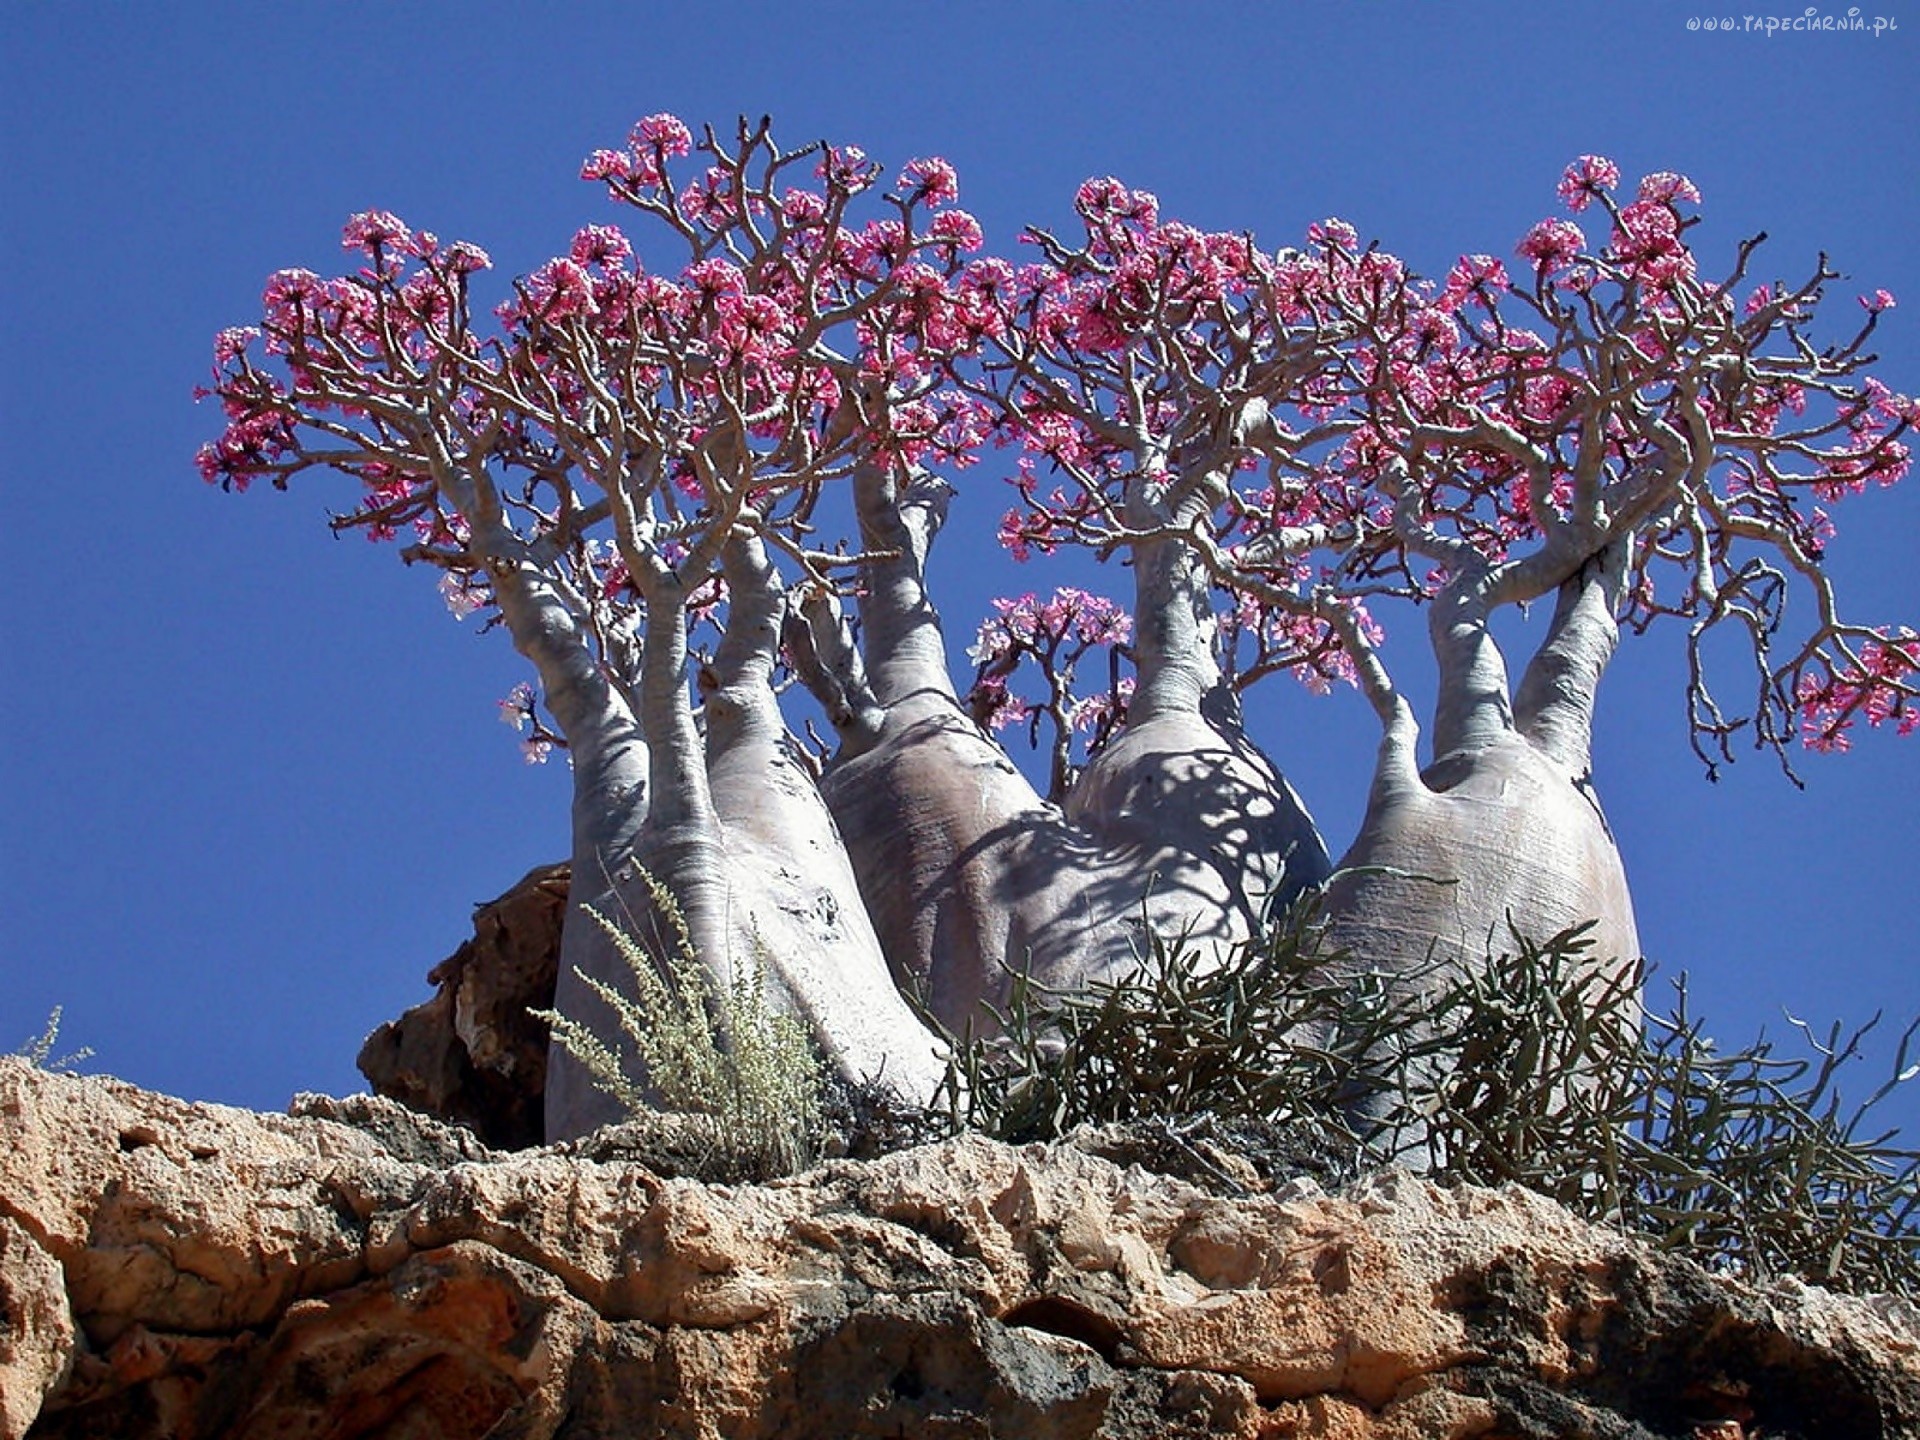 Ảnh cây hình chai trên đảo Socotra, biển Ả Rập